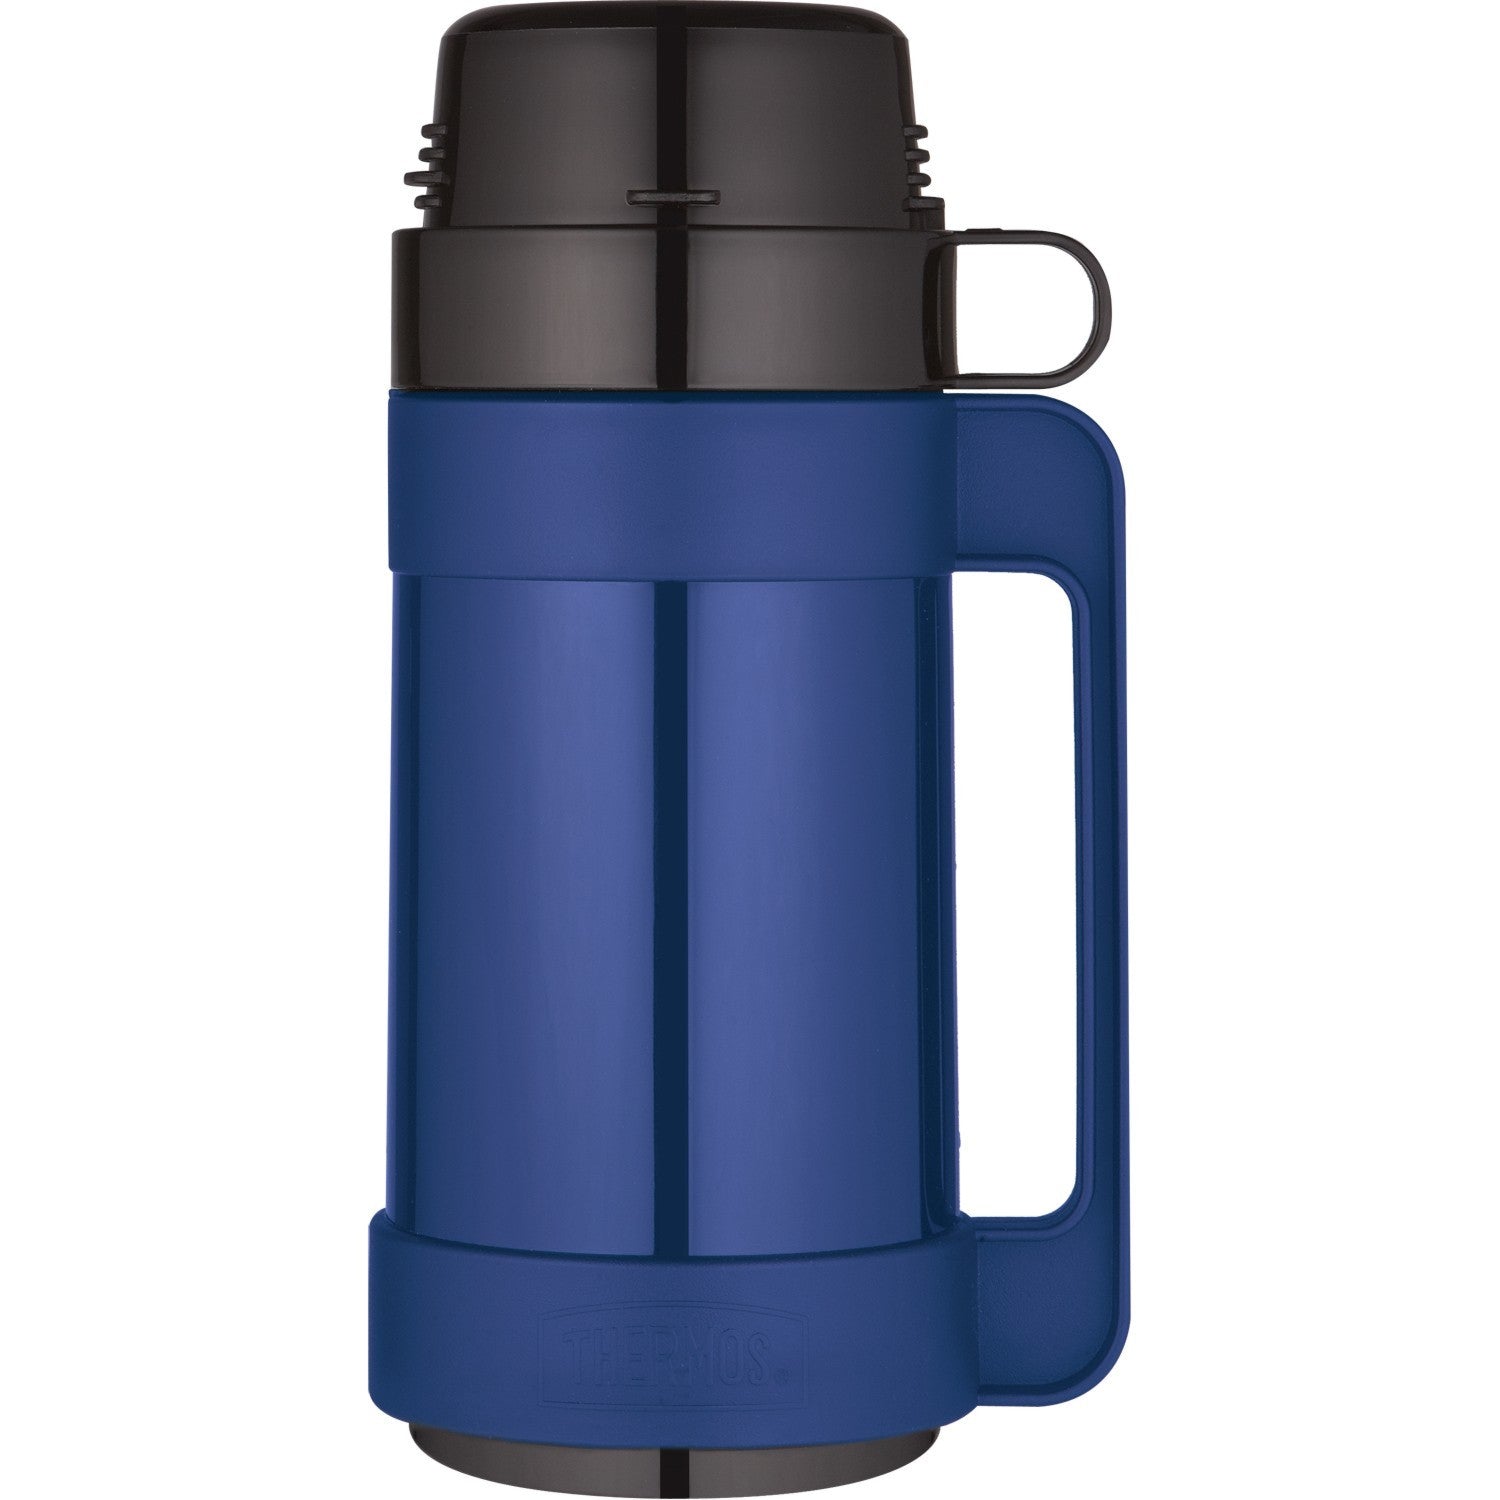 Thermos Gtb Mondial 1 Litre Vacuum Flask Blue